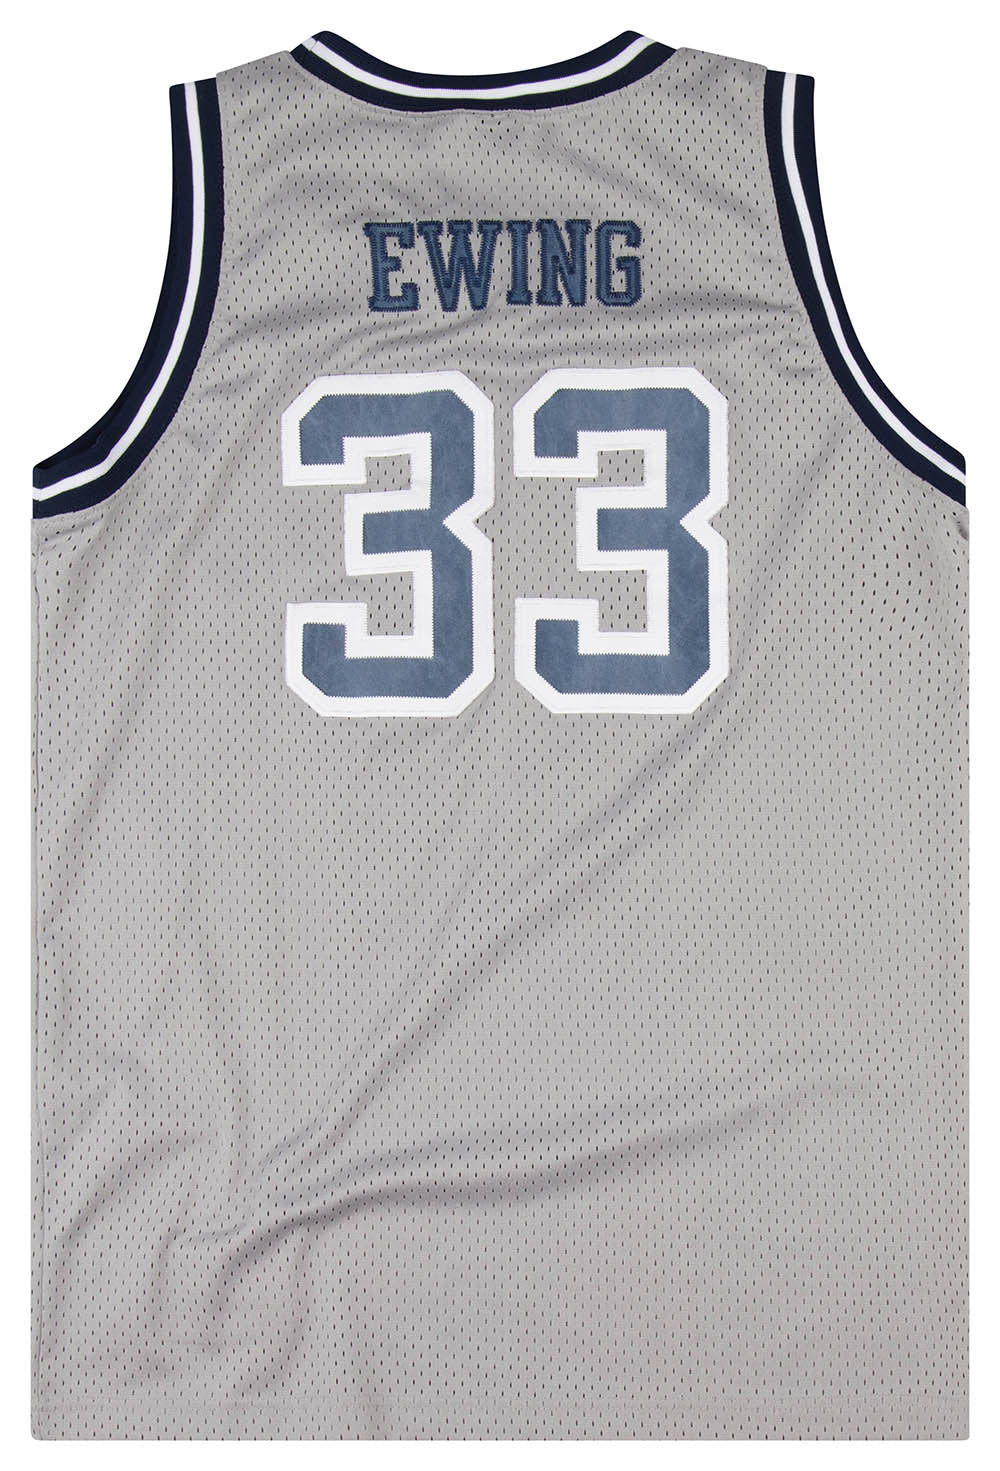 Nike Georgetown Hoyas Basketball Patrick Ewing #33 Throwback Jersey Men's  2XL